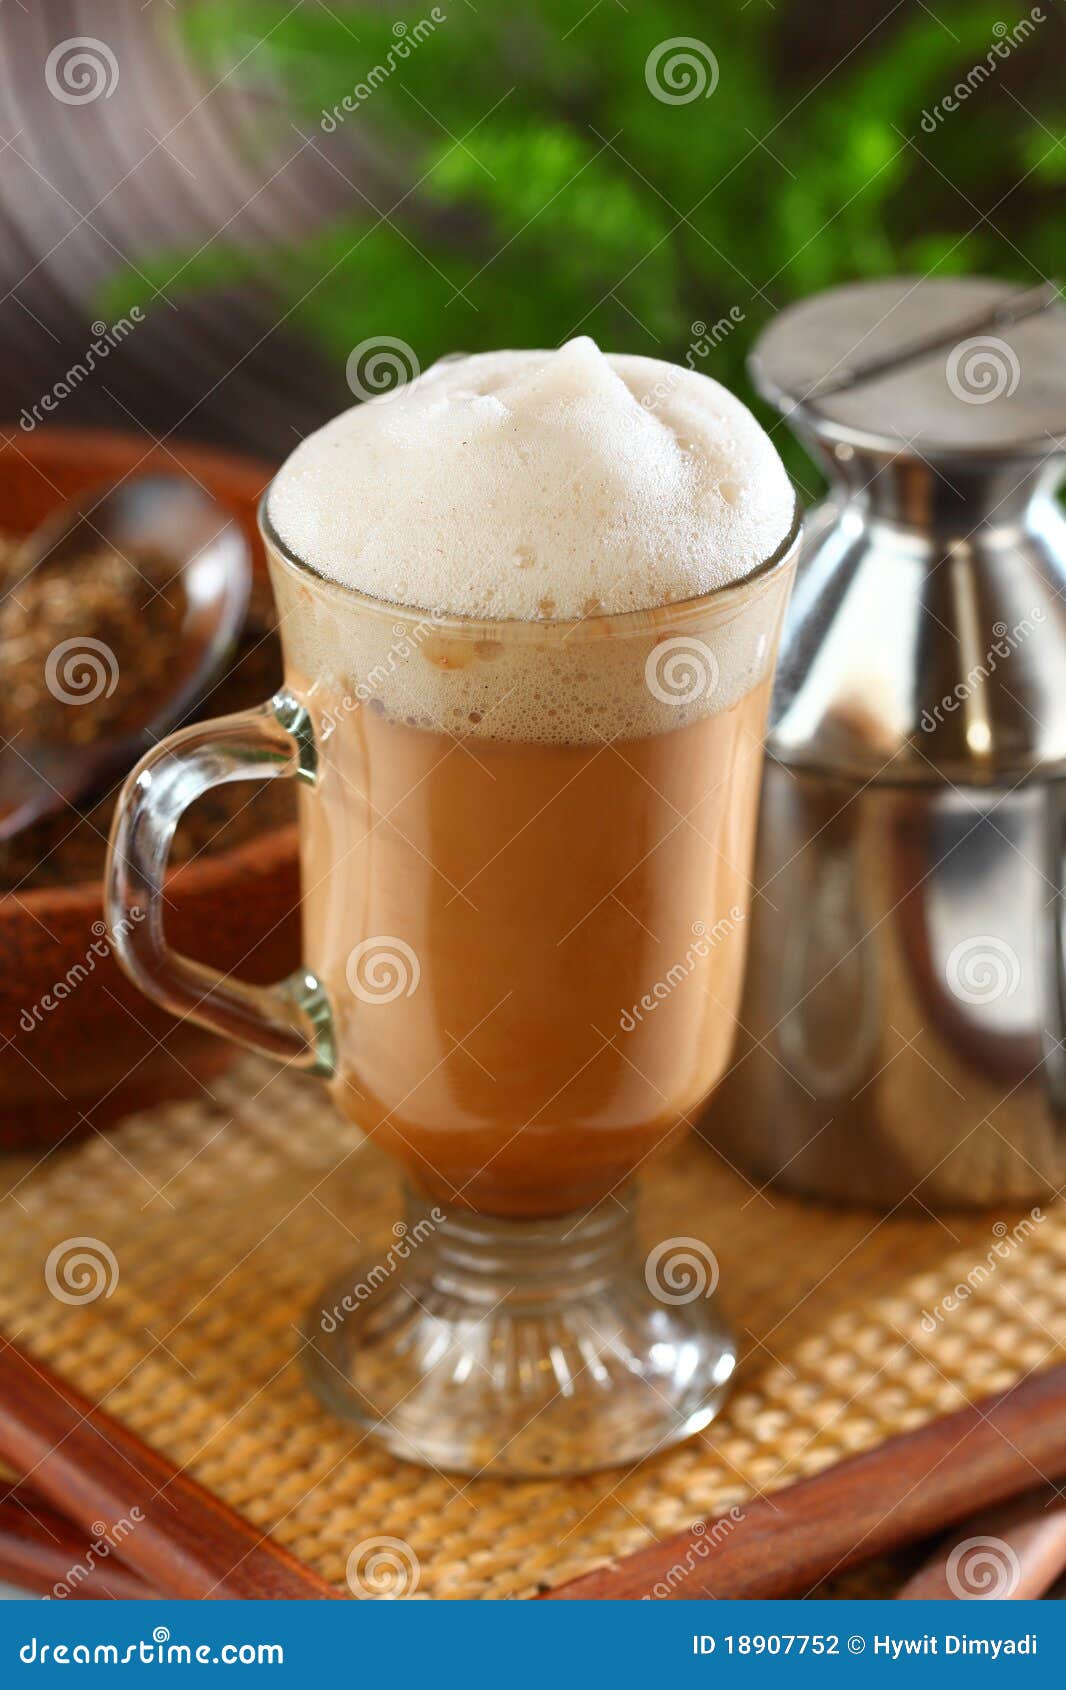 Heißes Getränk. Malaysian berühmt der Tarik, gezogener Tee, gewürztes heißes Teegetränk. Sein Name wird vom strömenden Prozess des Ziehens des Getränks während der Vorbereitung berechnet.